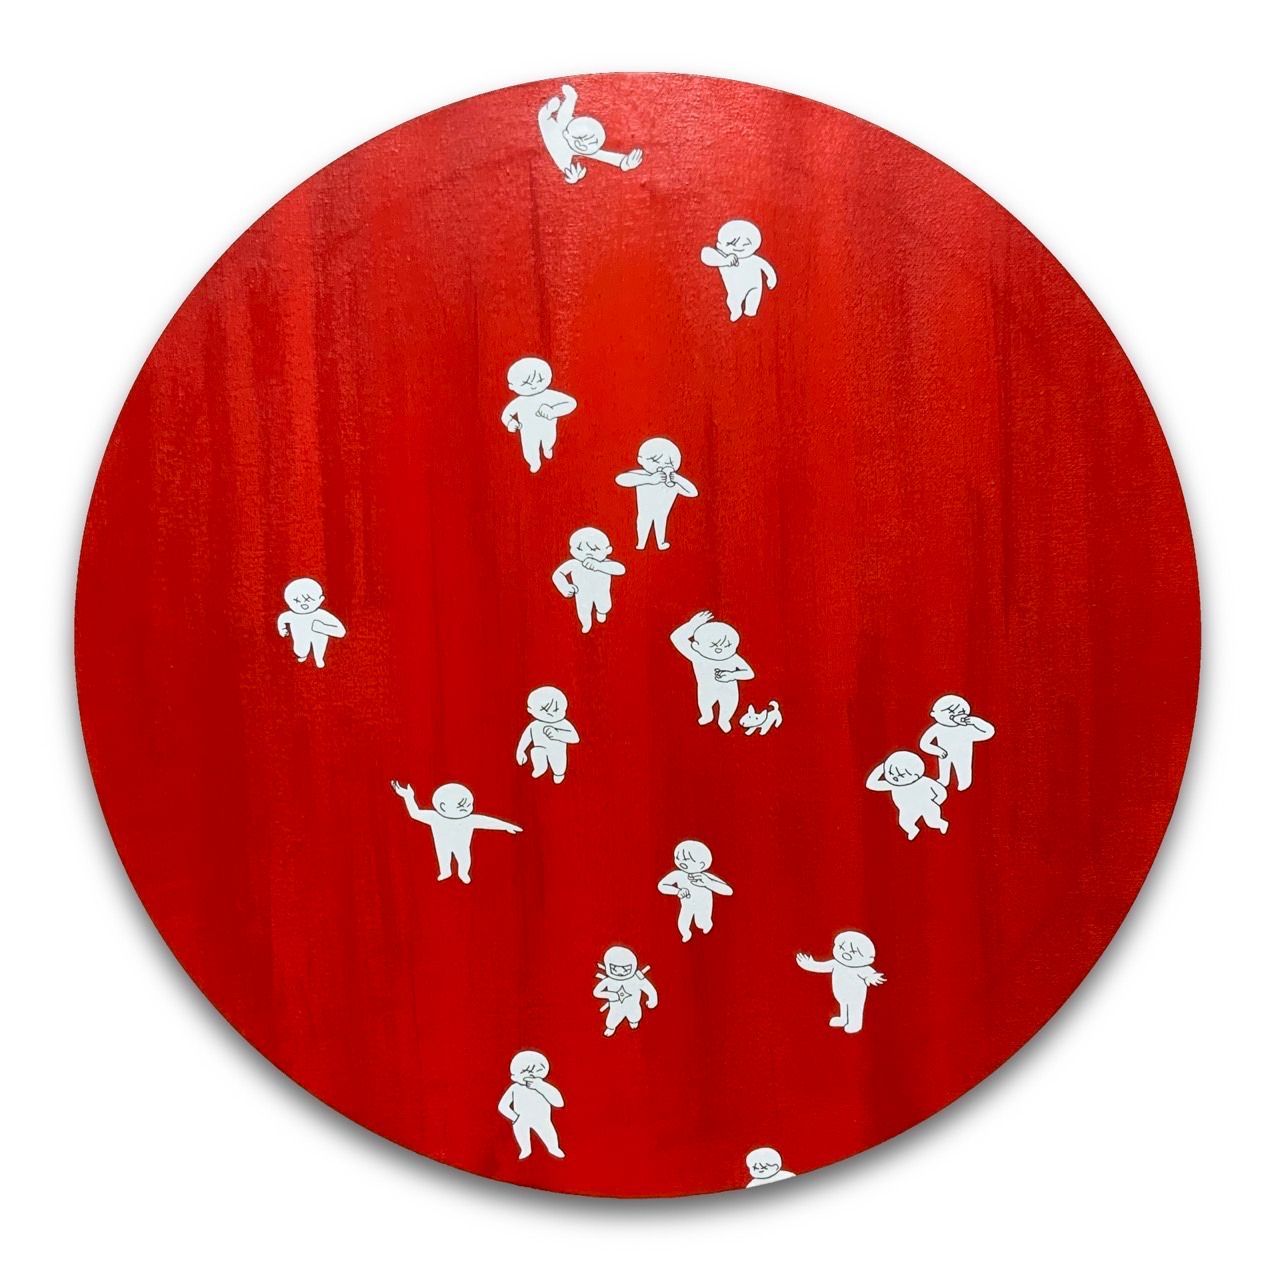 Peinture de l'artiste japonais Cute Fukuda, circulaire. Elle représente des personnages aux attitudes diverses se détachant sur un fond rouge. Cette œuvre fait partie d'une série consacrée aux relations humaines, un thème cher à l'artiste.